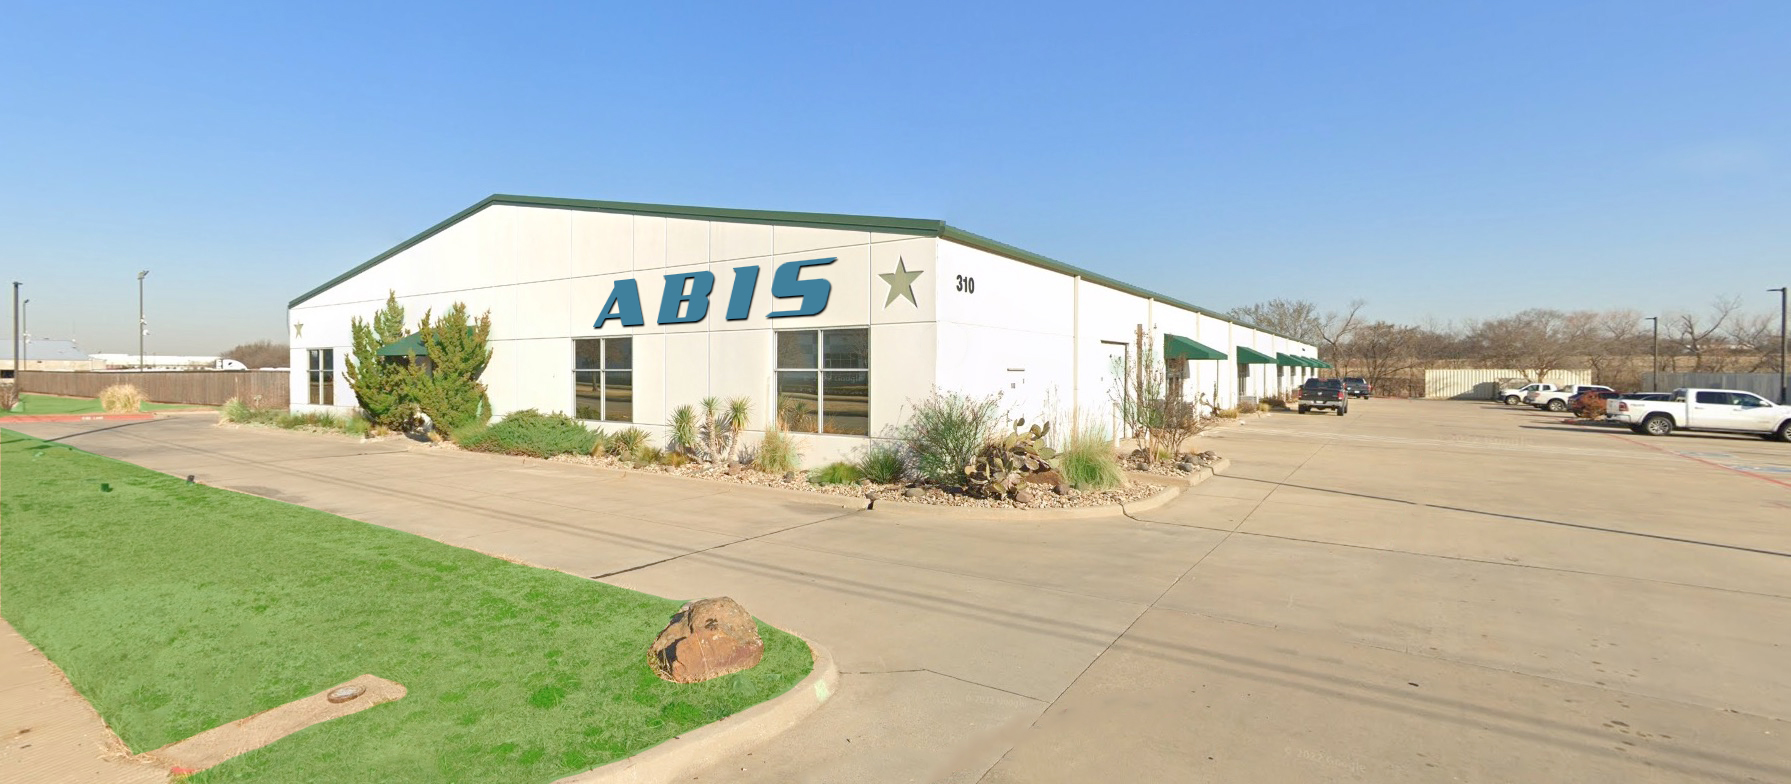 ABIS Corporate Headquarters